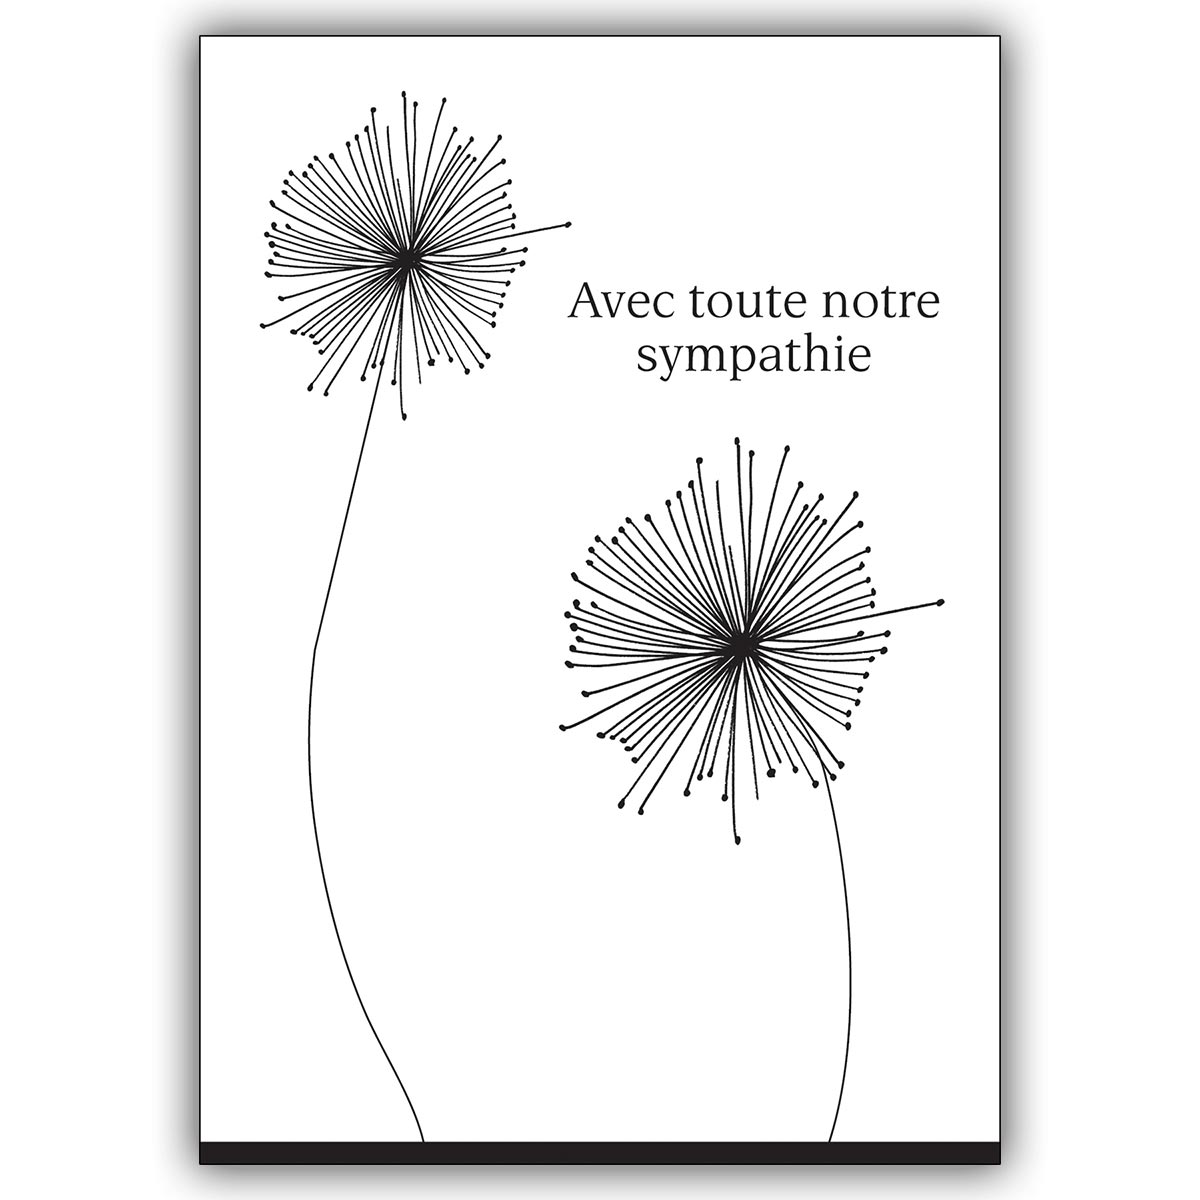 Edle Französische Trauerkarte: Avec toute notre sympathie